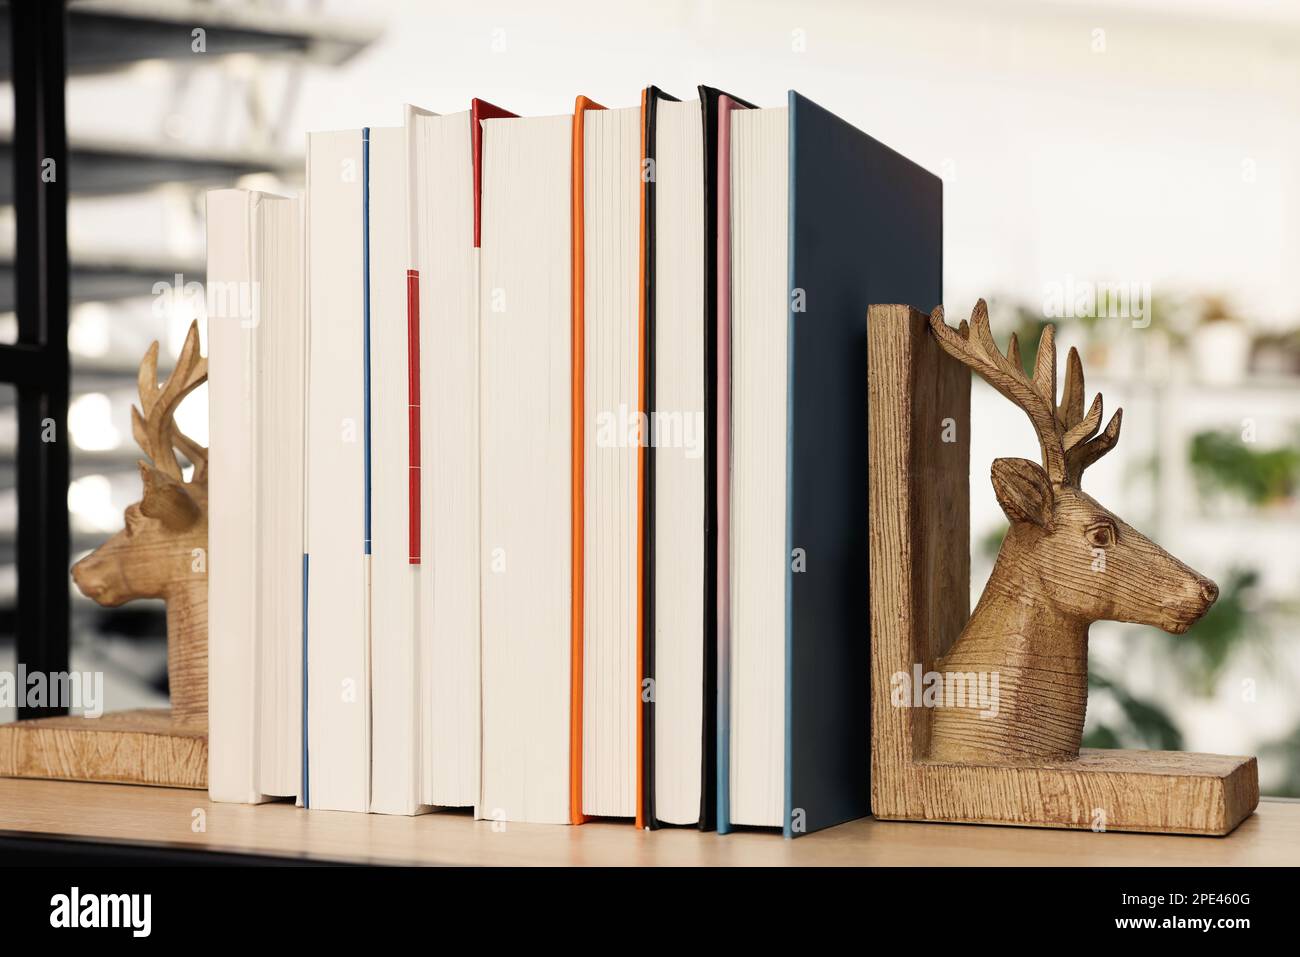 Sujetaleros en forma de ciervo de madera con libros en el estante interior Foto de stock